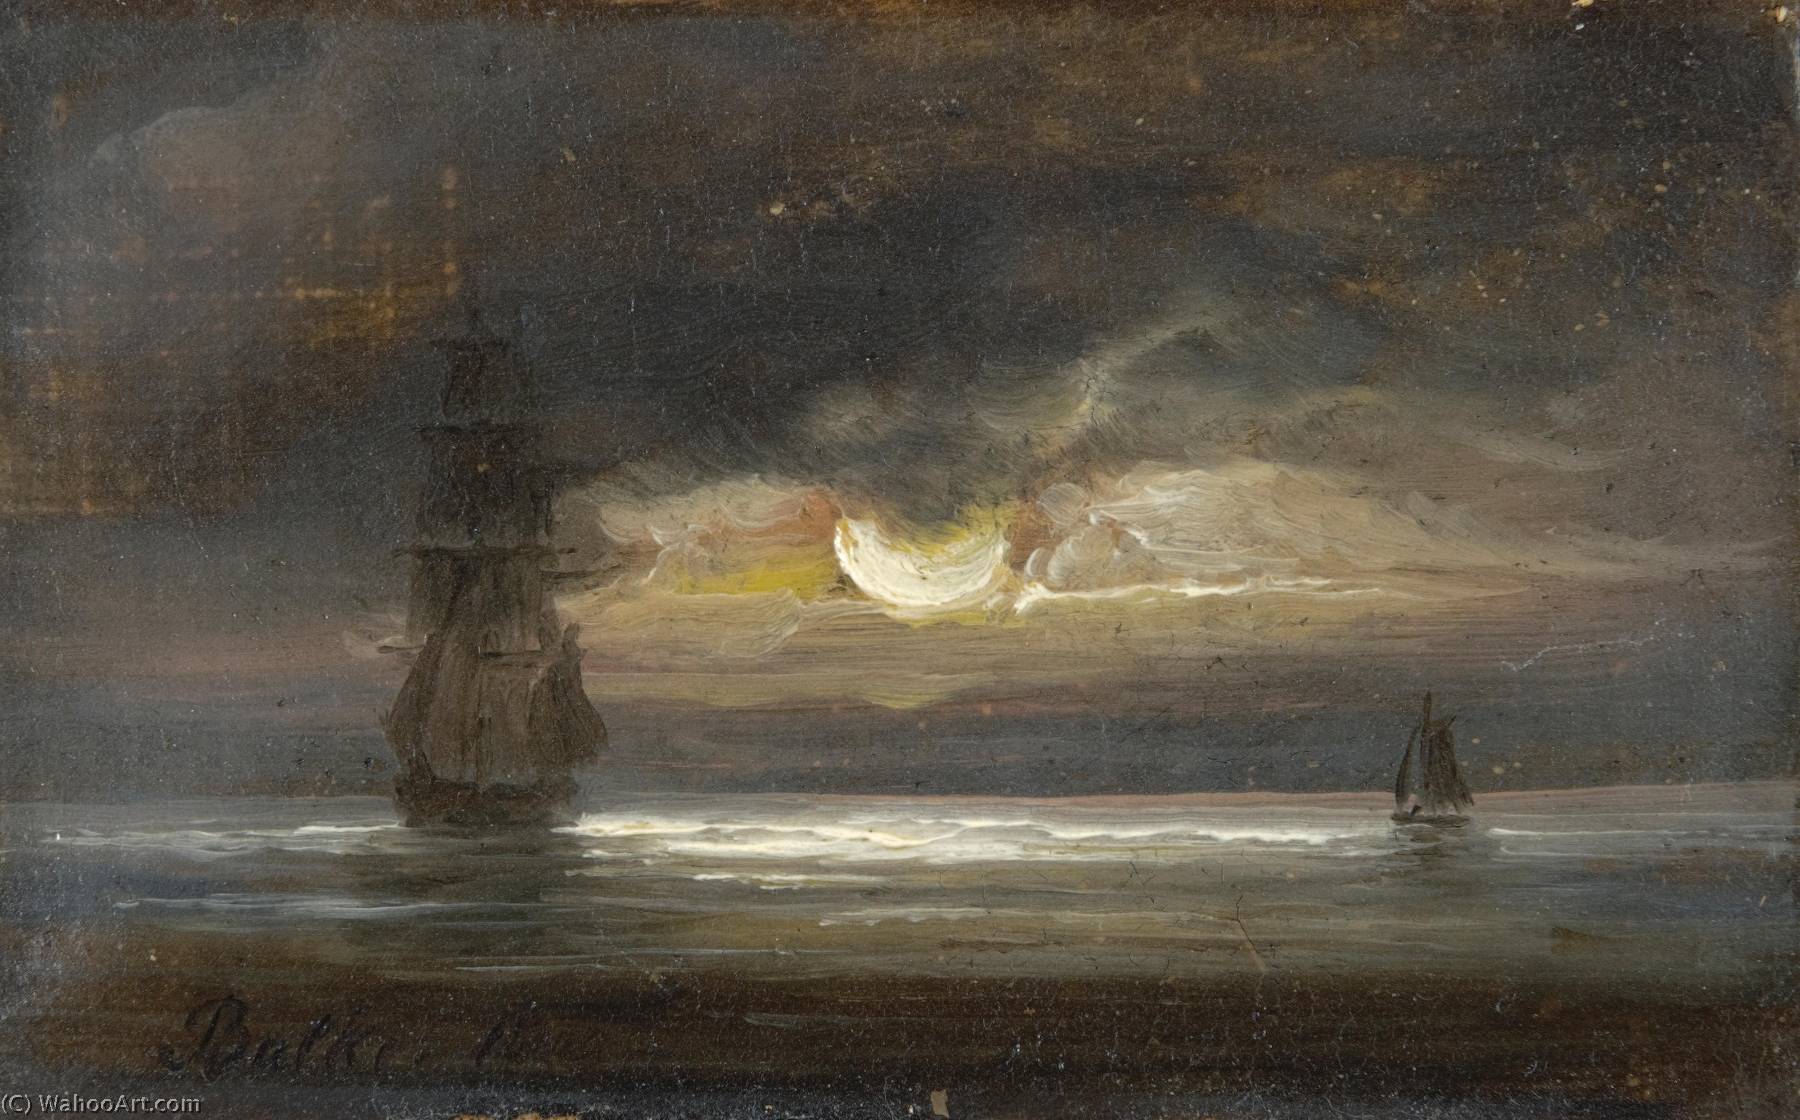 WikiOO.org - Энциклопедия изобразительного искусства - Живопись, Картины  Peder Balke - два парусные  лодок  около  Лунный свет